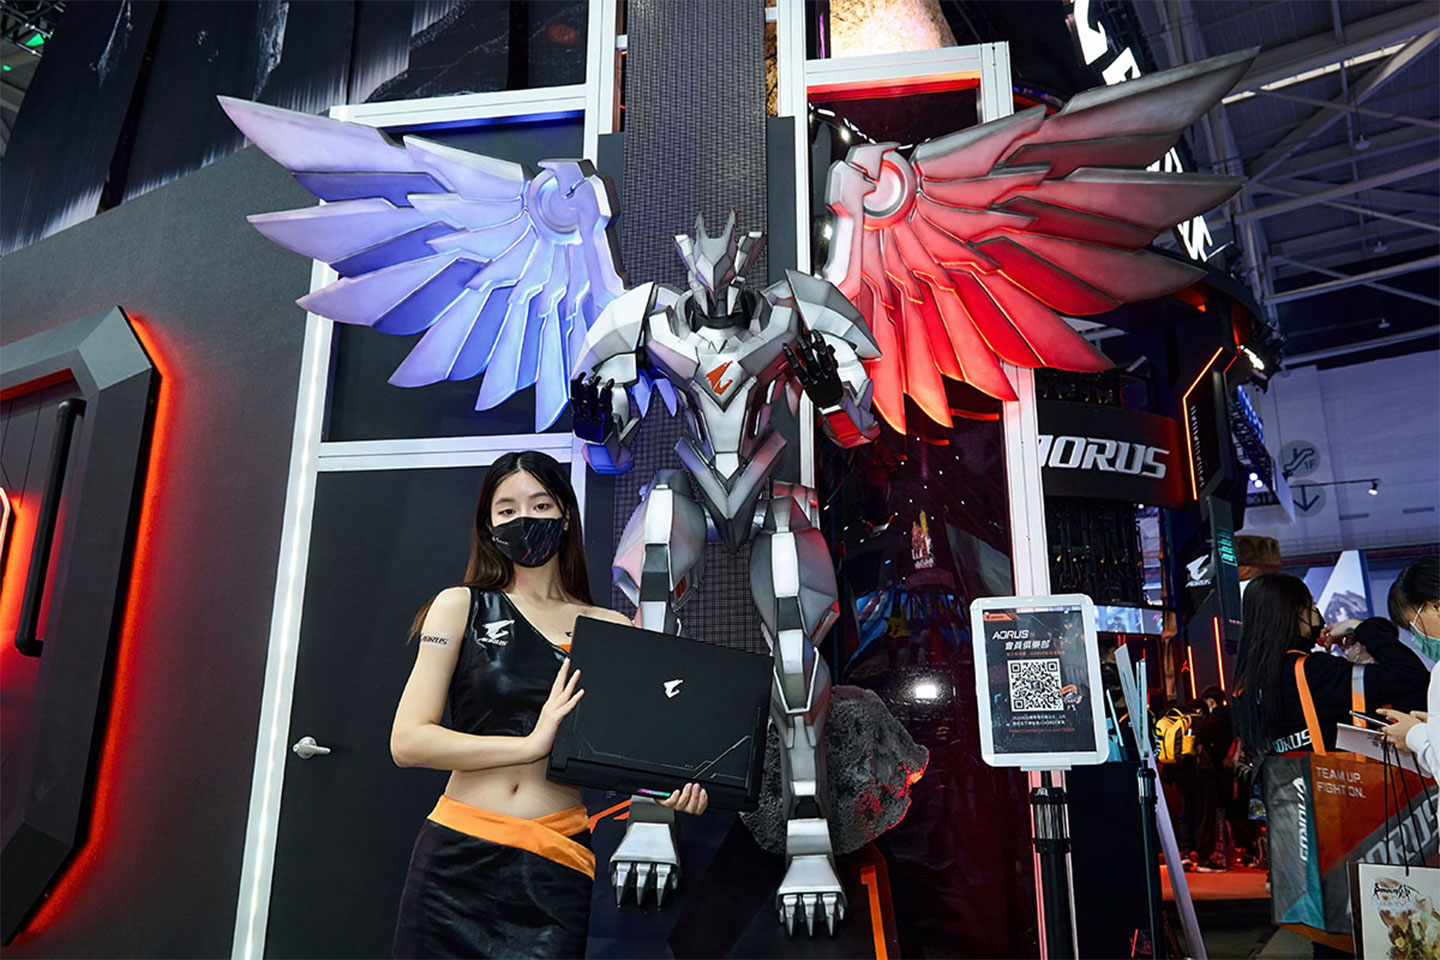 台北國際電玩展的 AORUS 展區入口旁可以看到一尊大型的神鷹雕像，也成為許多玩家拍照打卡的景點之一。